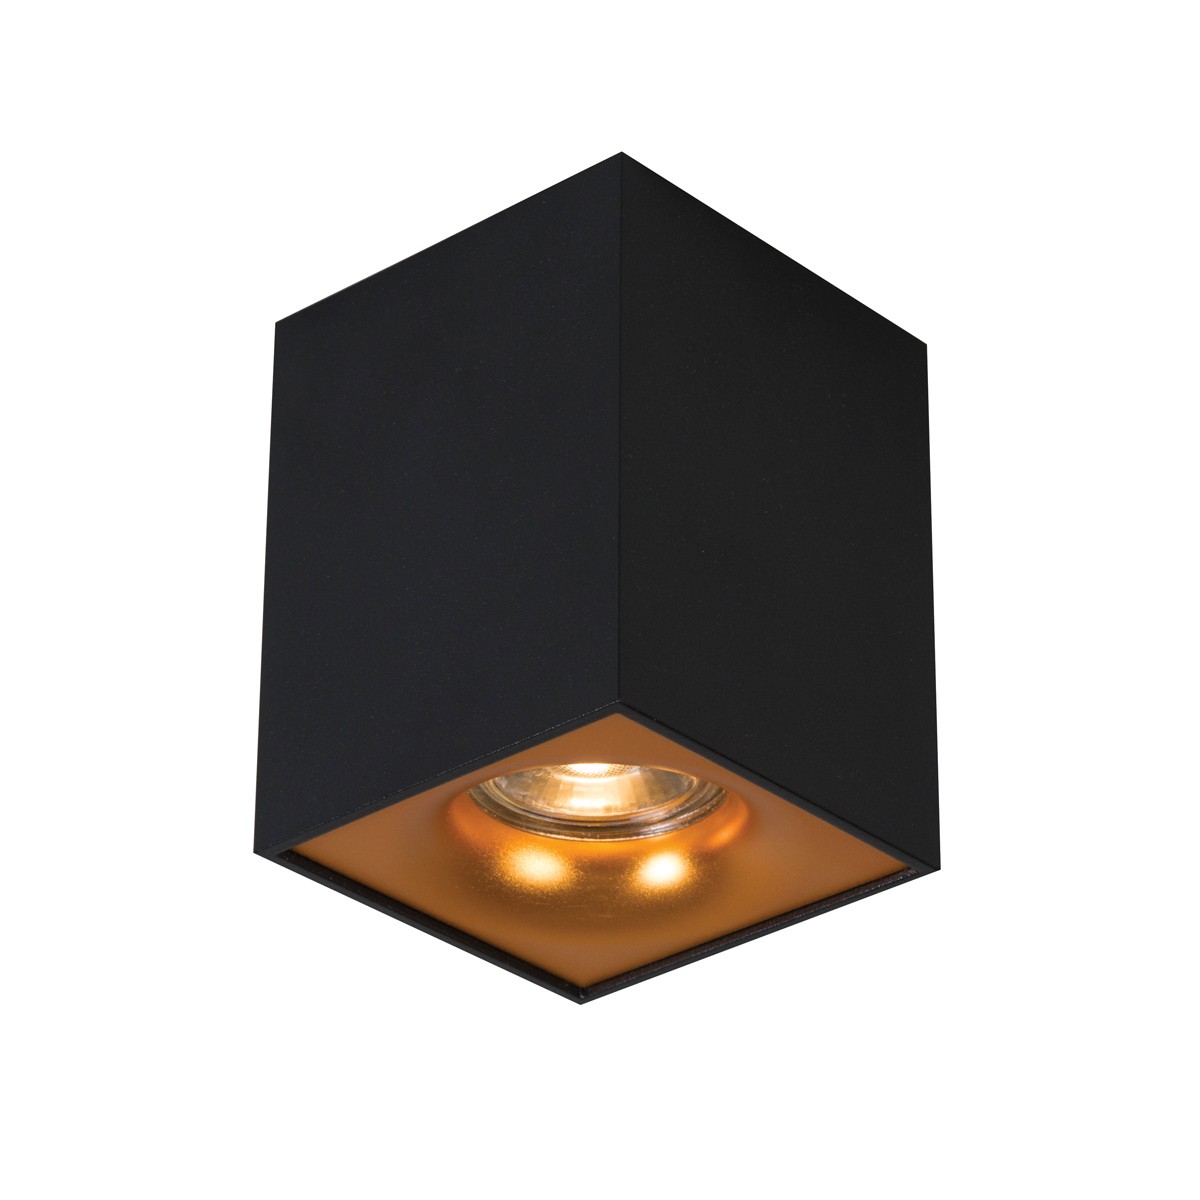 Φωτιστικό αλουμινίου  οροφής κύβος GU10 max 35W μαύρο σαγρέ - χρυσό 82,5χ82,5χ105mm VK/03085CE/BGD